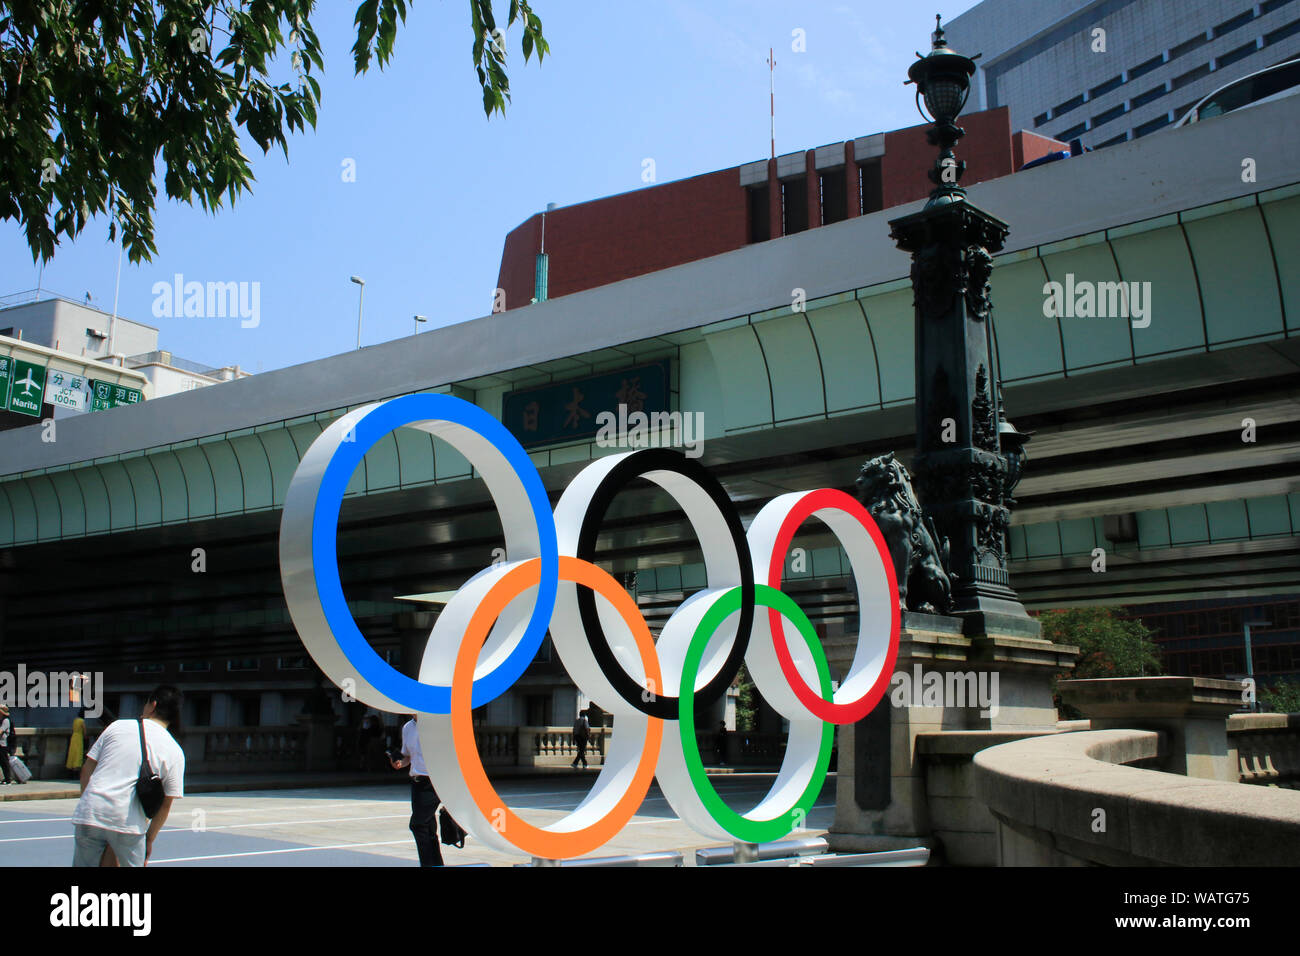 Gli anelli olimpici sono visualizzati sul ponte di Nihonbashi segnato un anno di distanza dai Giochi Olimpici e Paraolimpici Tokyo 2020. Nihonbashi, Tokyo. Foto Stock